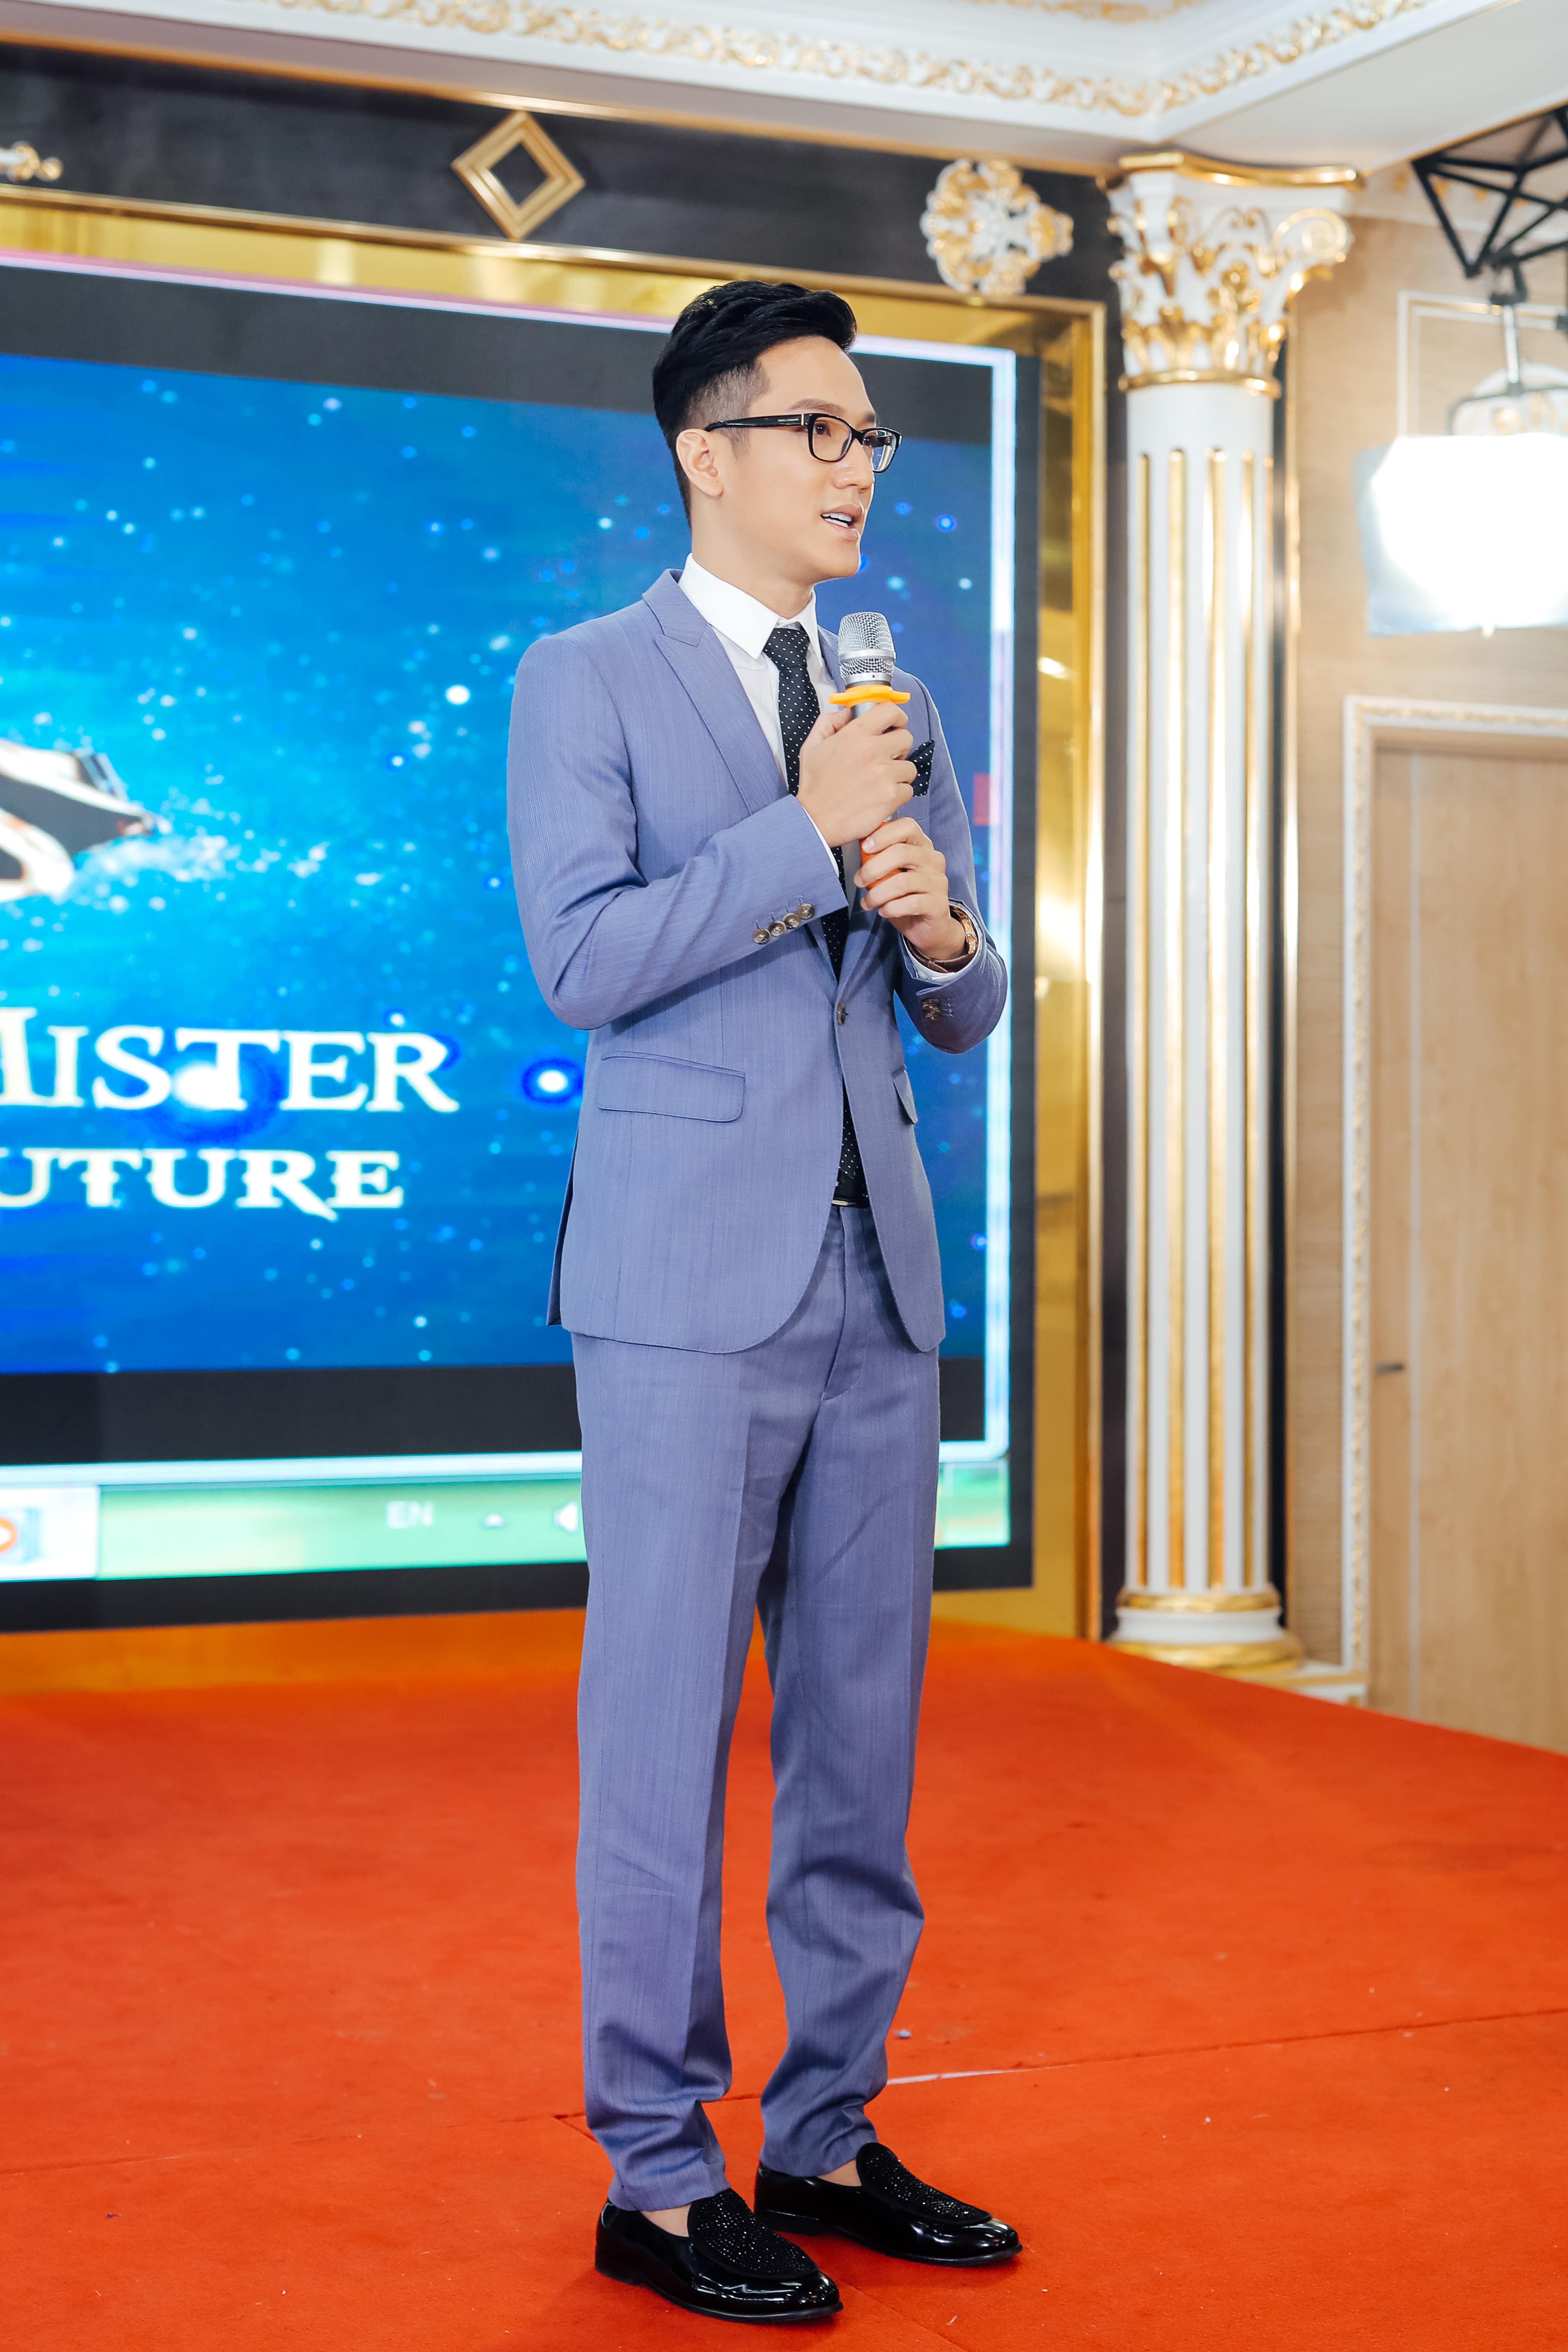 Diễn viên Chí Nhân đảm nhận vai trò host của chương trình Miss and Mister Future